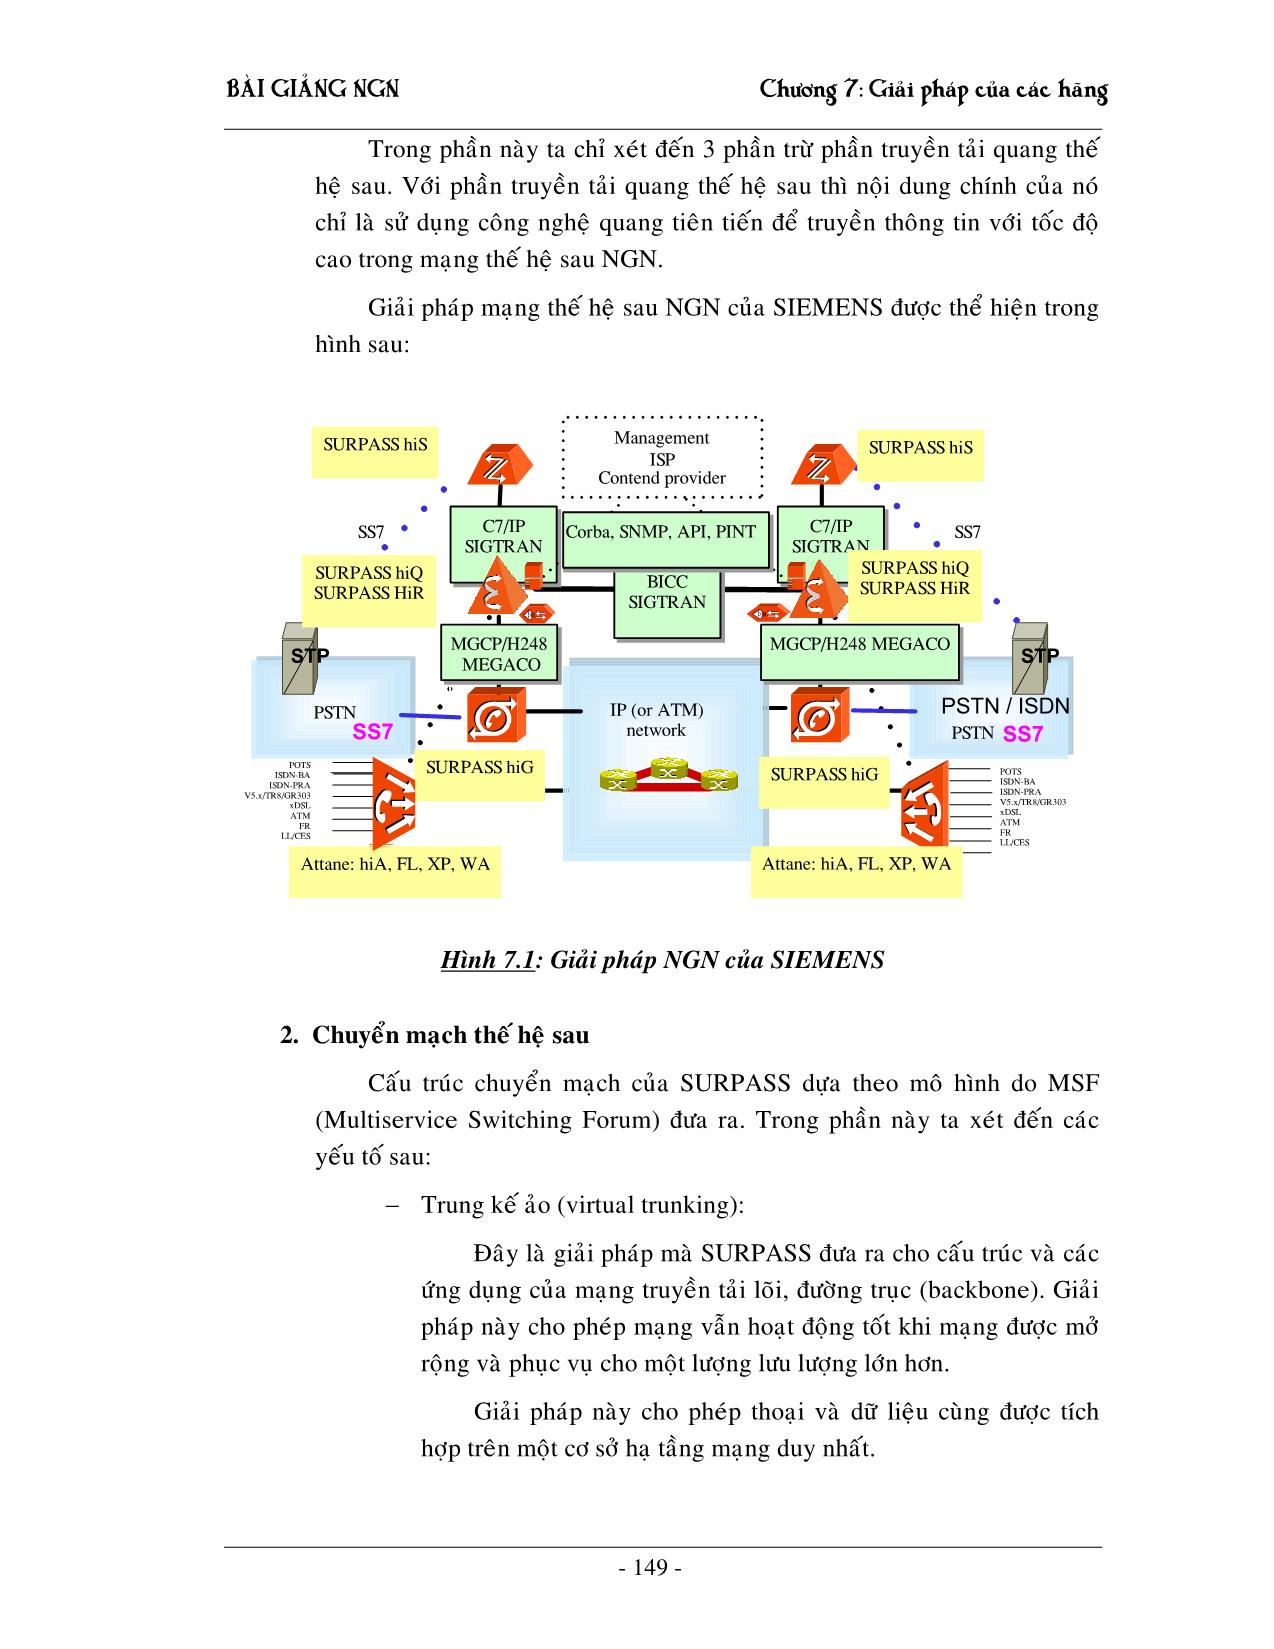 Giáo trình NGN - Chương 7: Giải pháp NGN của các hãng trang 2